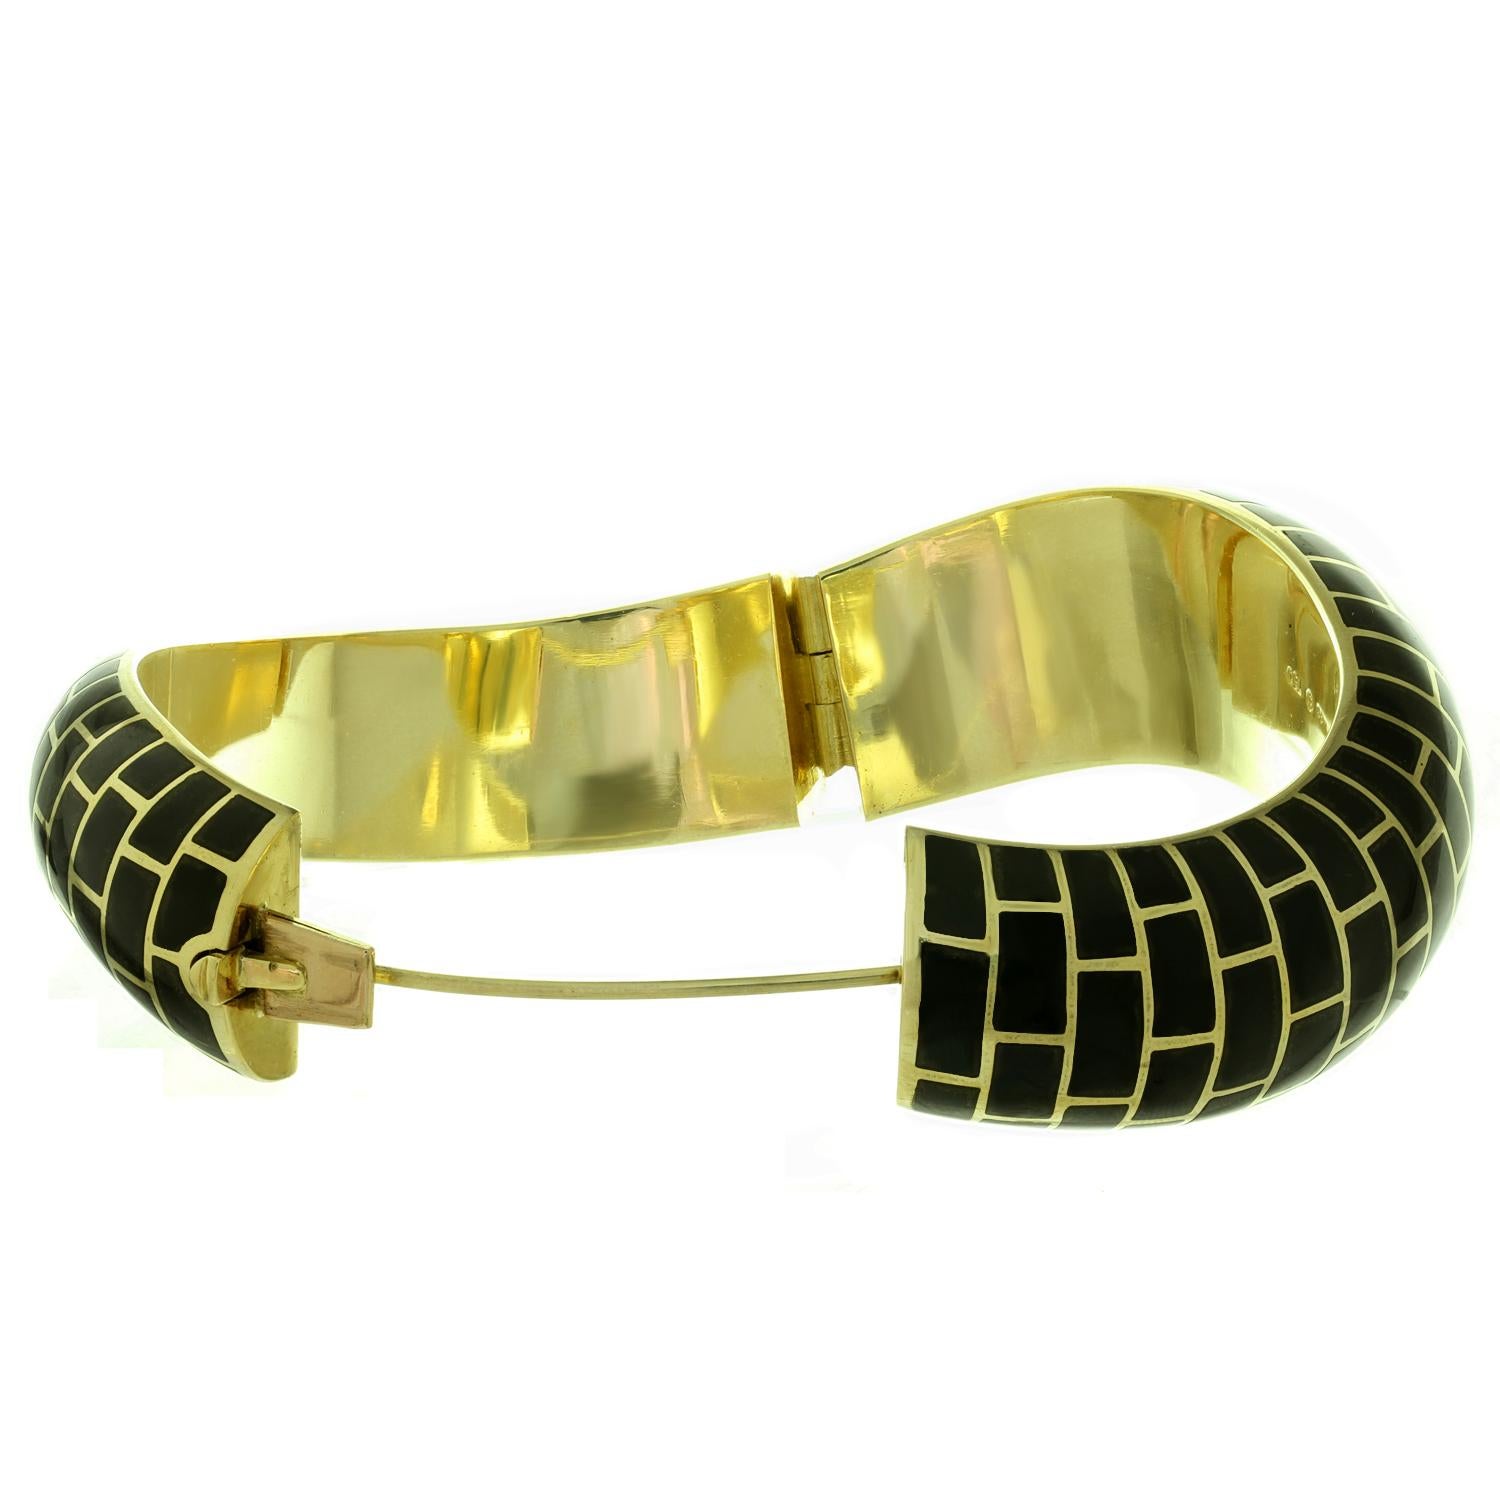 Ce magnifique bracelet bangle en forme de vague d'Angela Cummings pour Tiffany & Co présente un motif géométrique chic réalisé en or jaune 18 carats et incrusté de jade noir. Fabriqué aux États-Unis vers les années 1980. Dimensions : 1,10